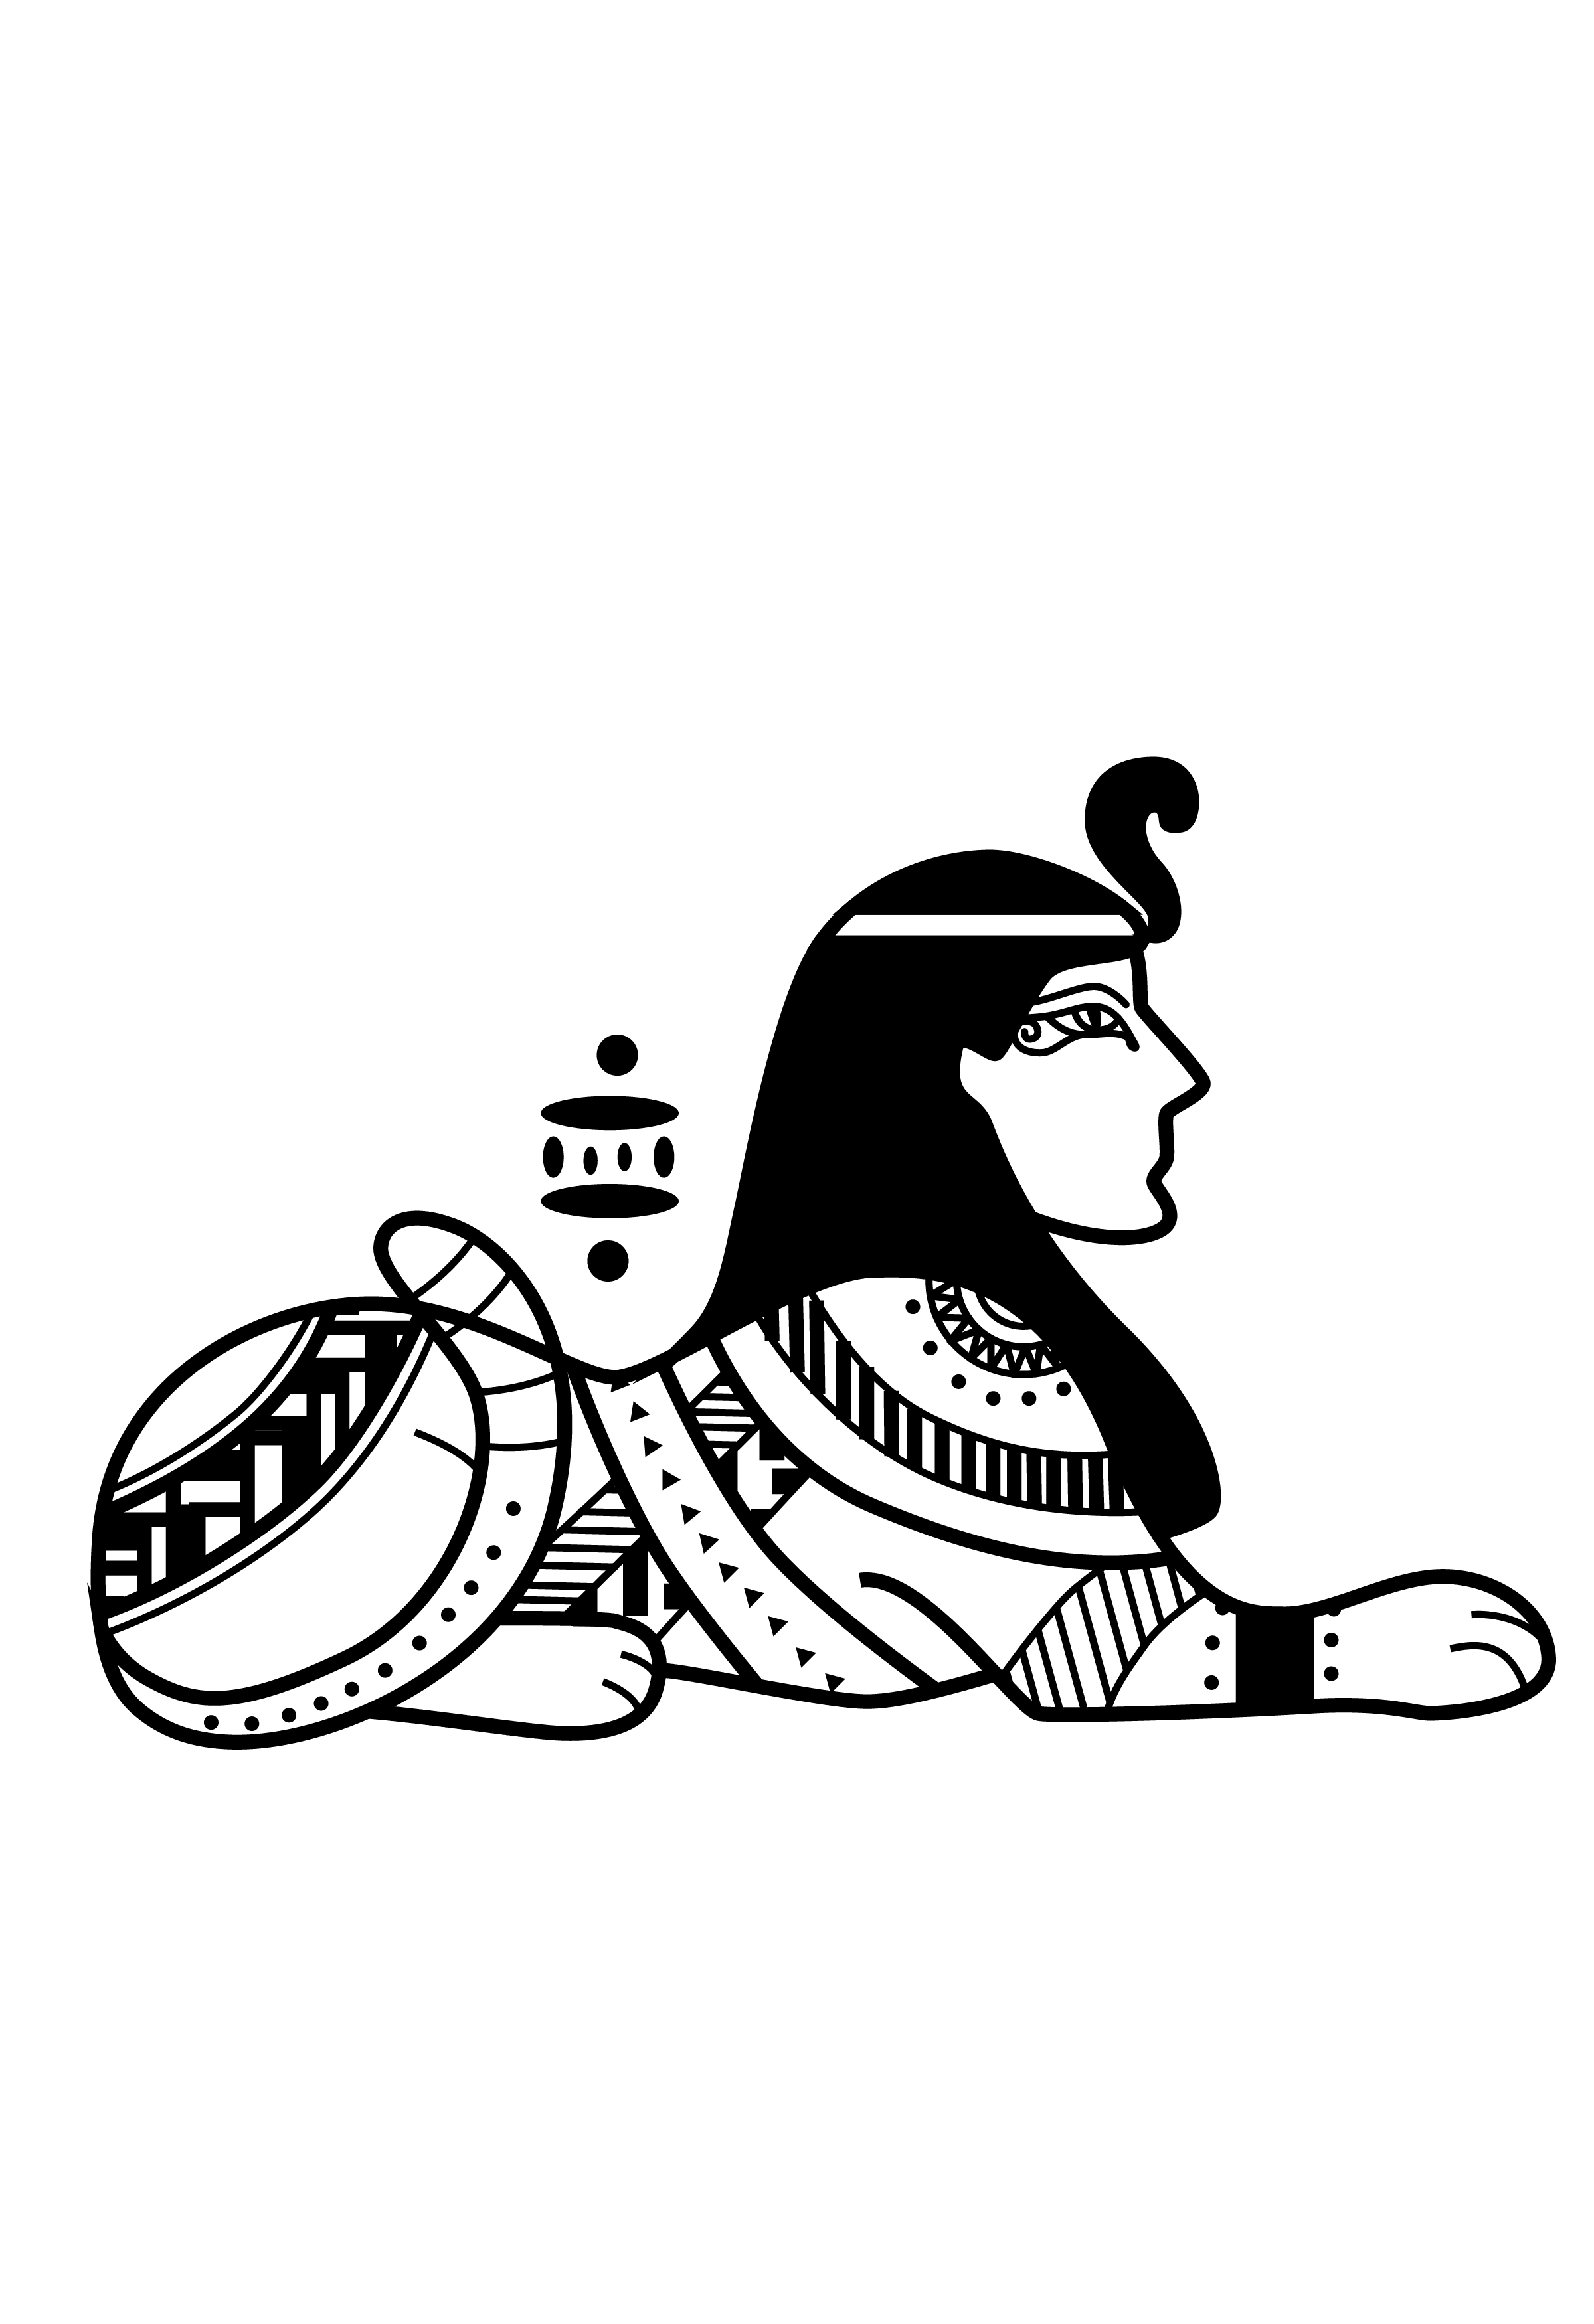 埃及轮廓图手绘图片